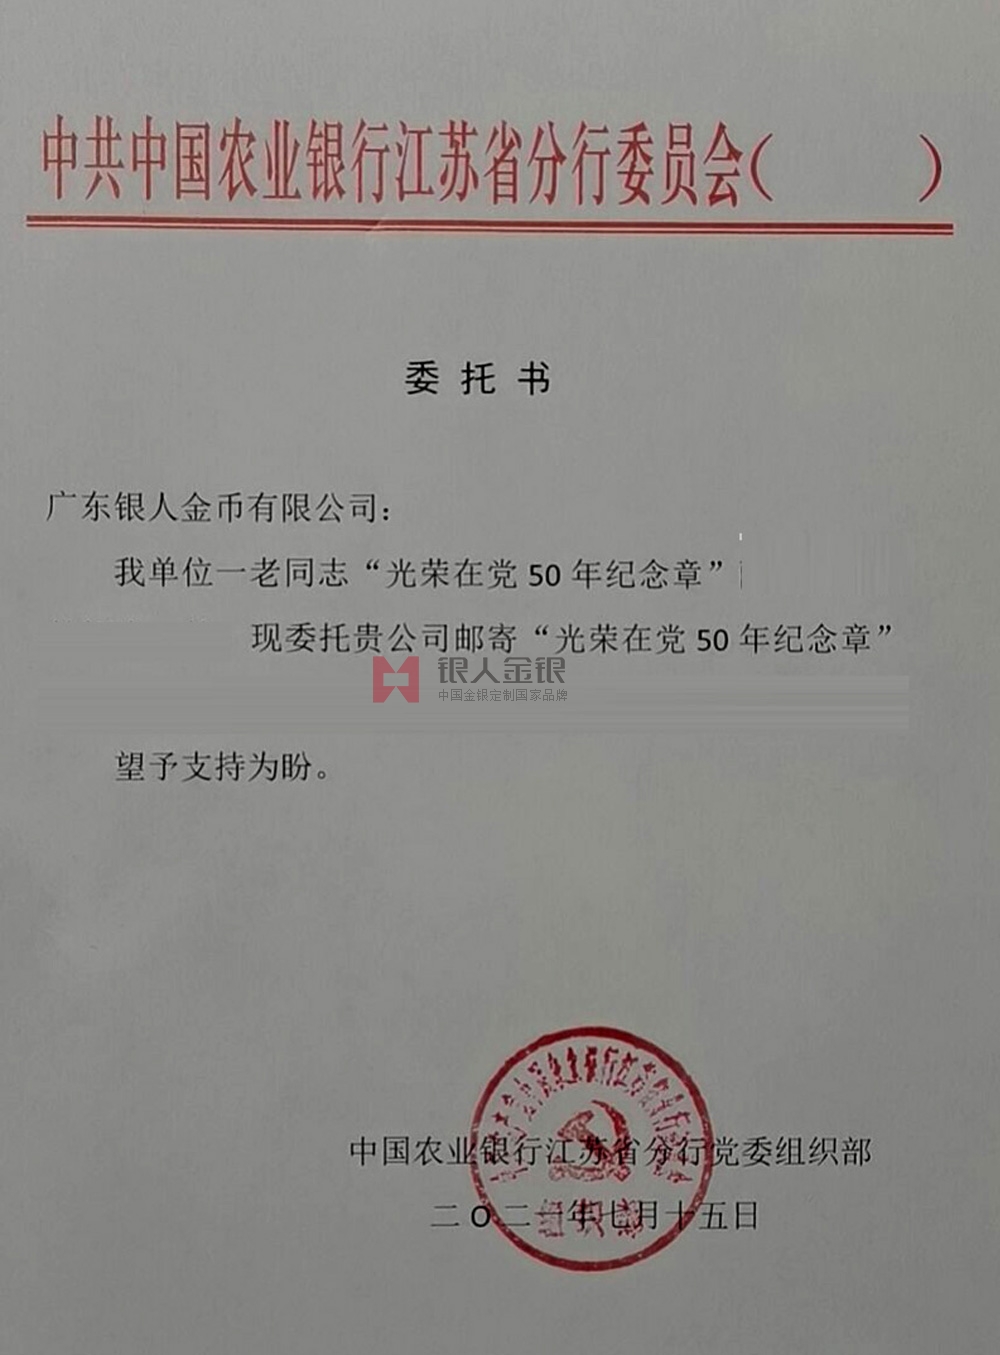 中国农业银行江苏省分行定制纪念章公函